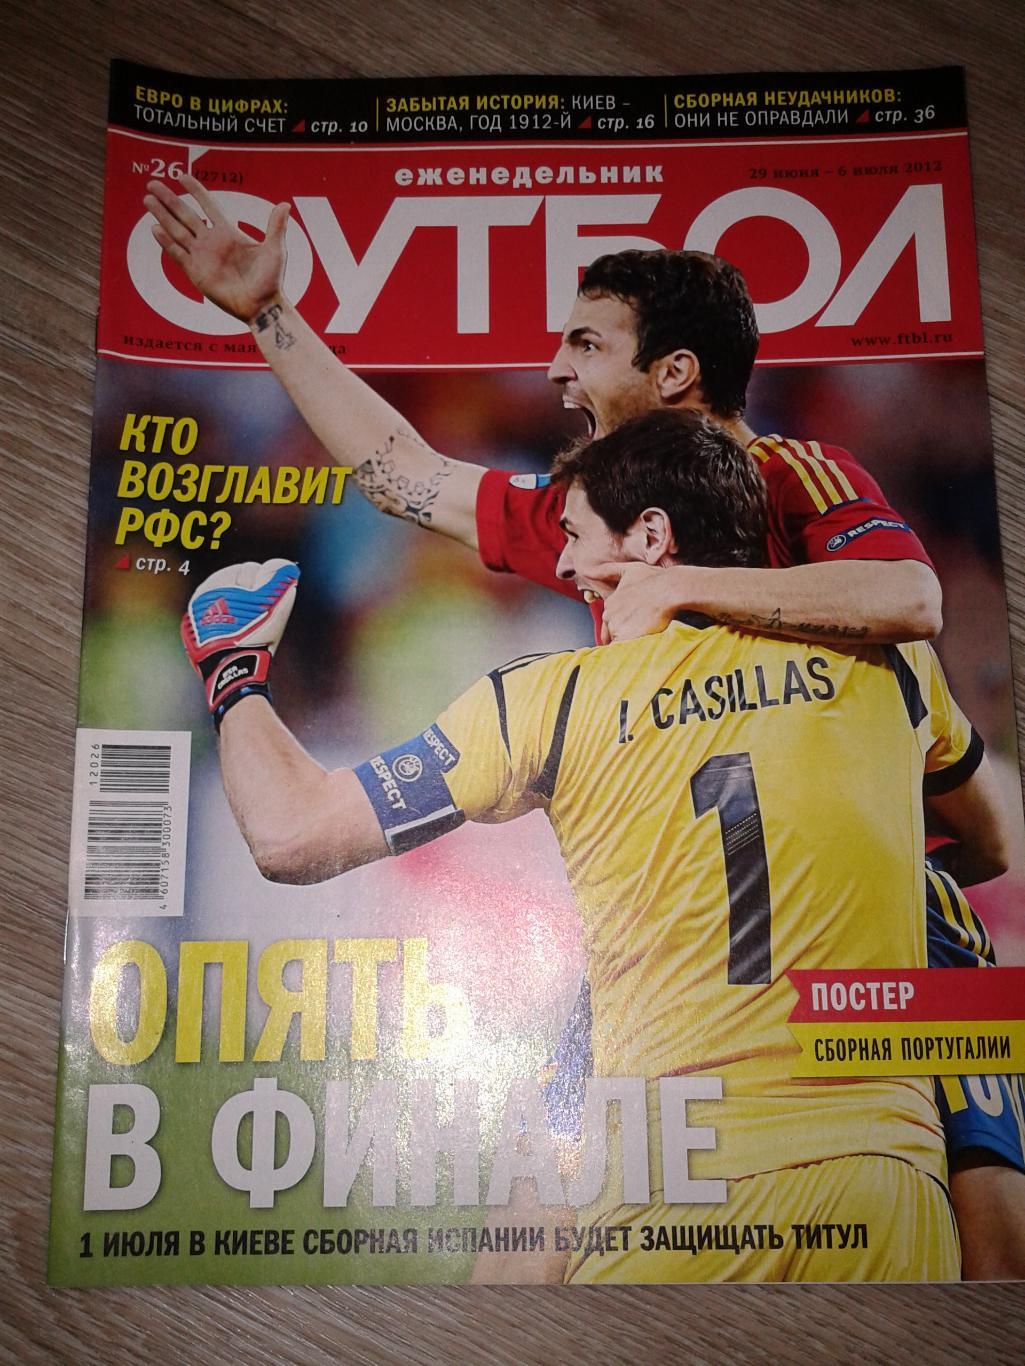 2012 Еженедельник Футбол №26